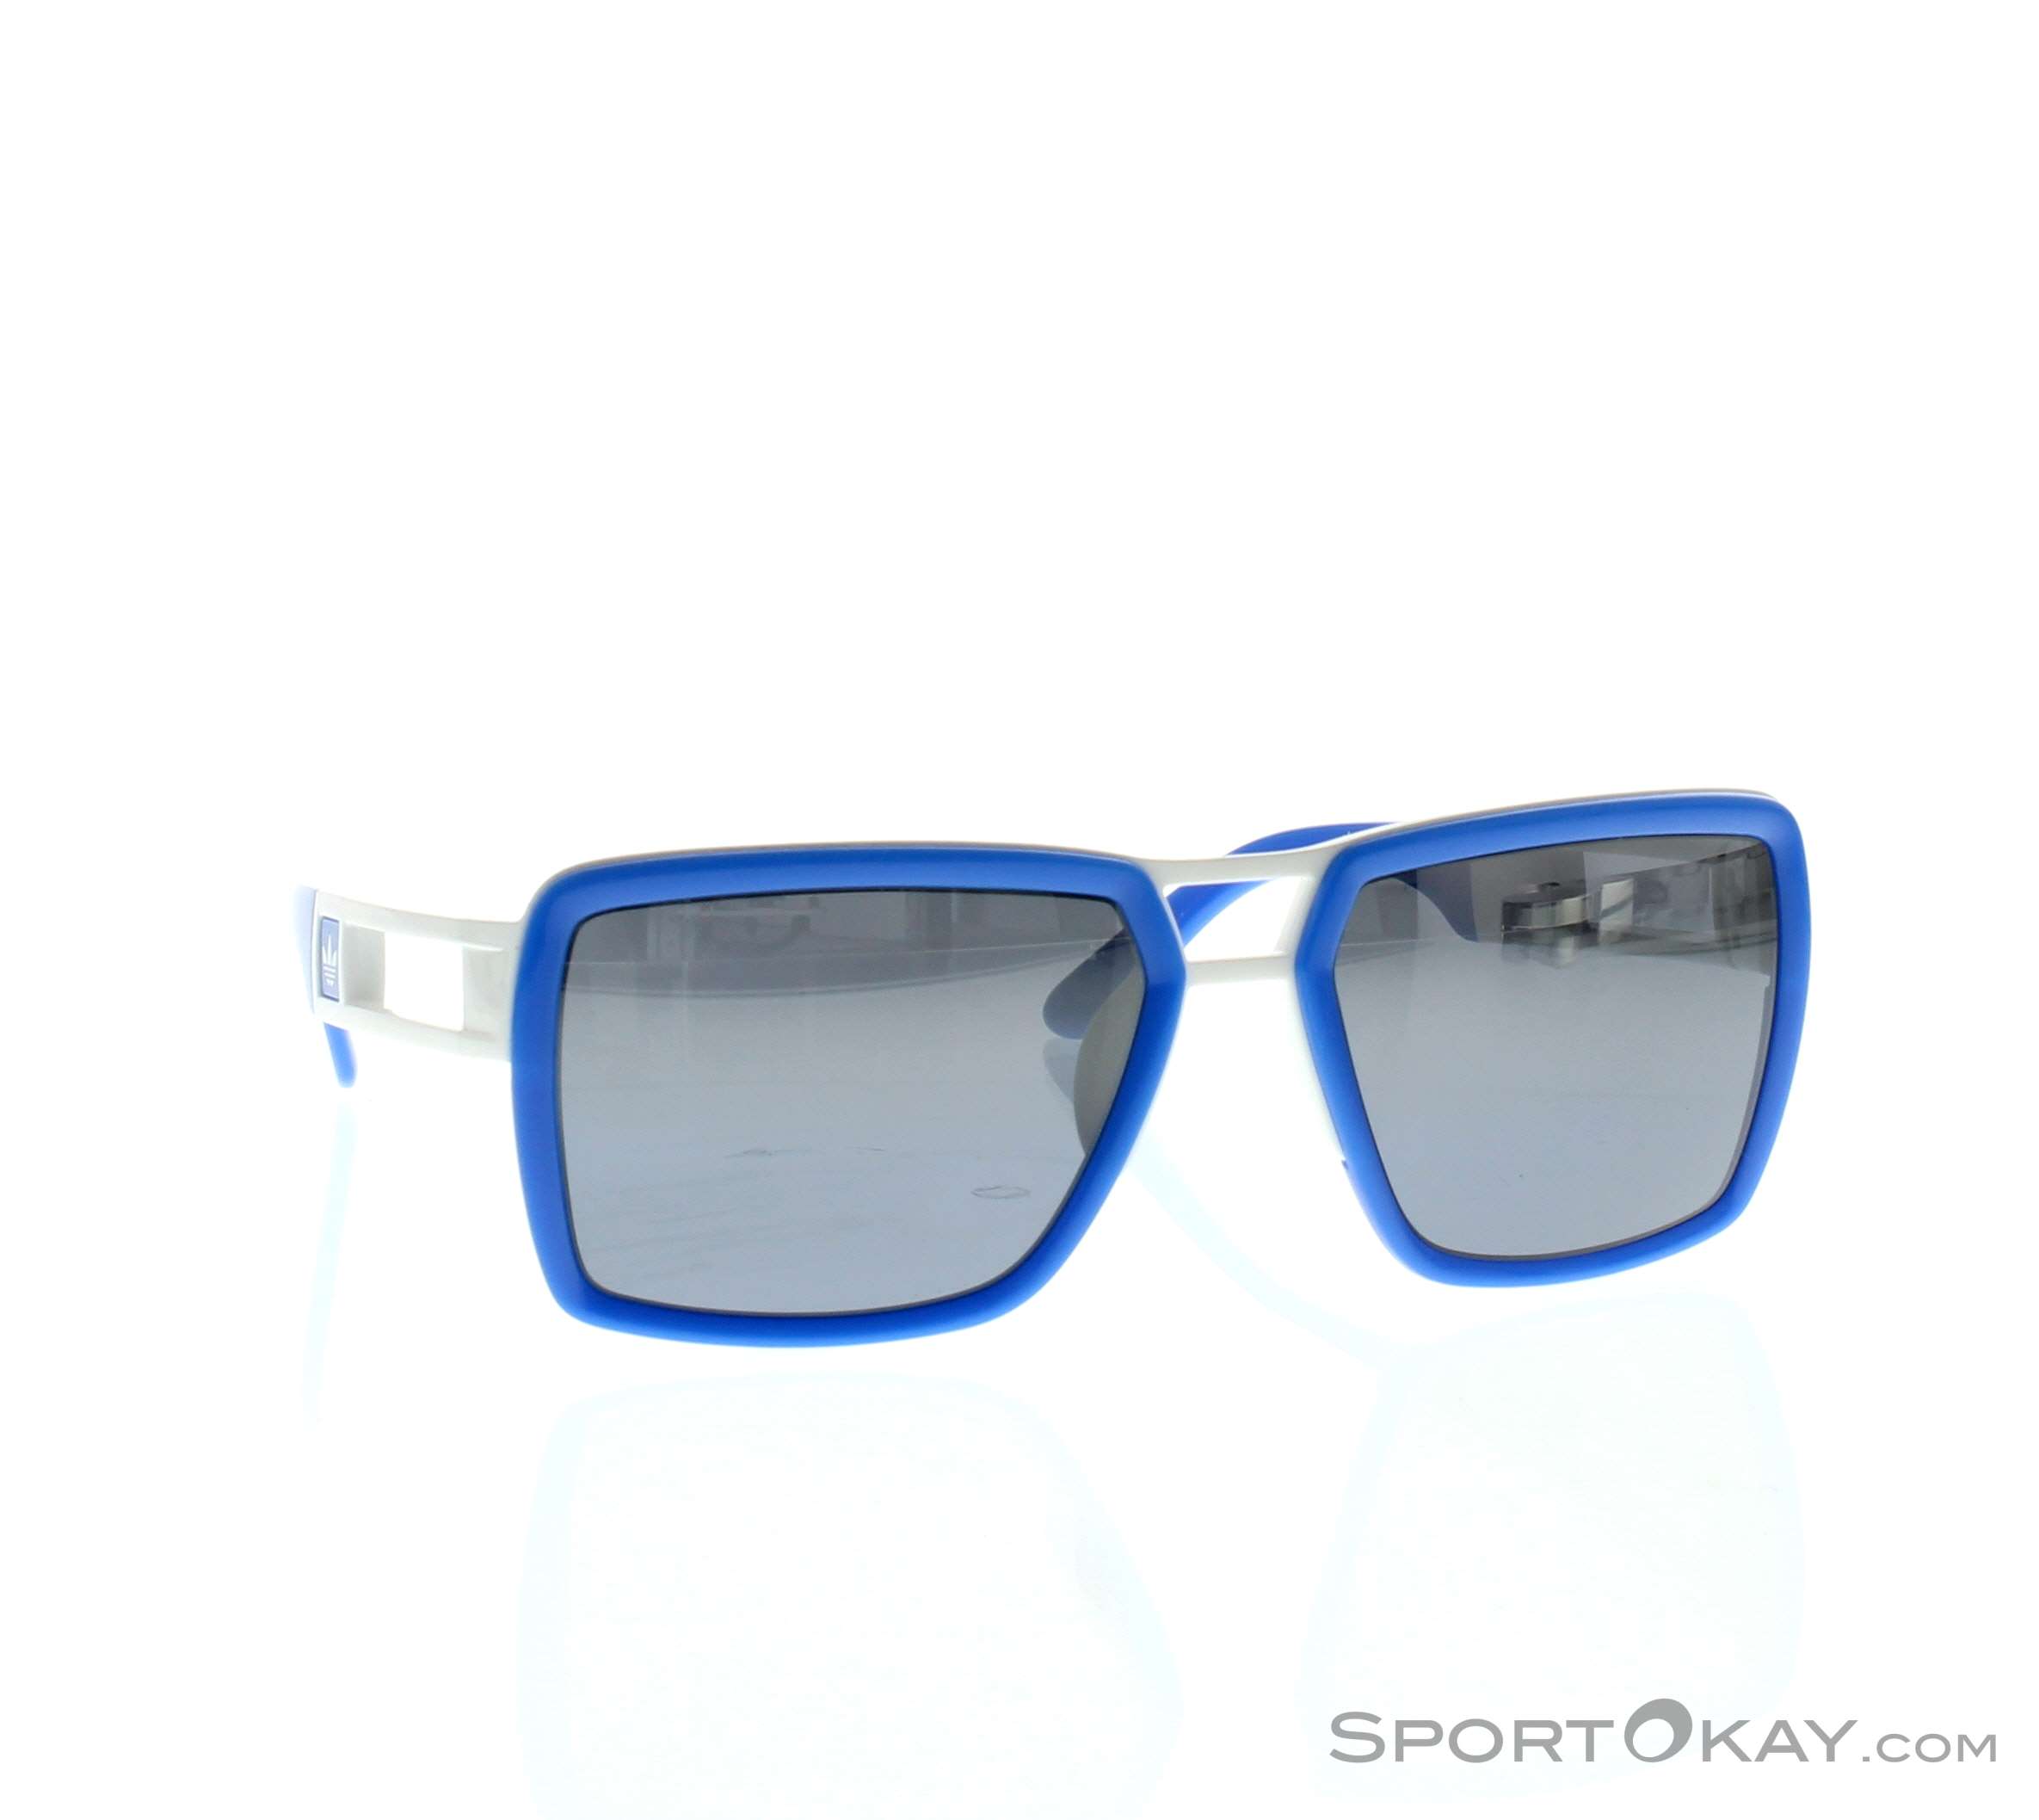 Adidas customize Sunglasses - Fashion Sunglasses - Sunglasses -